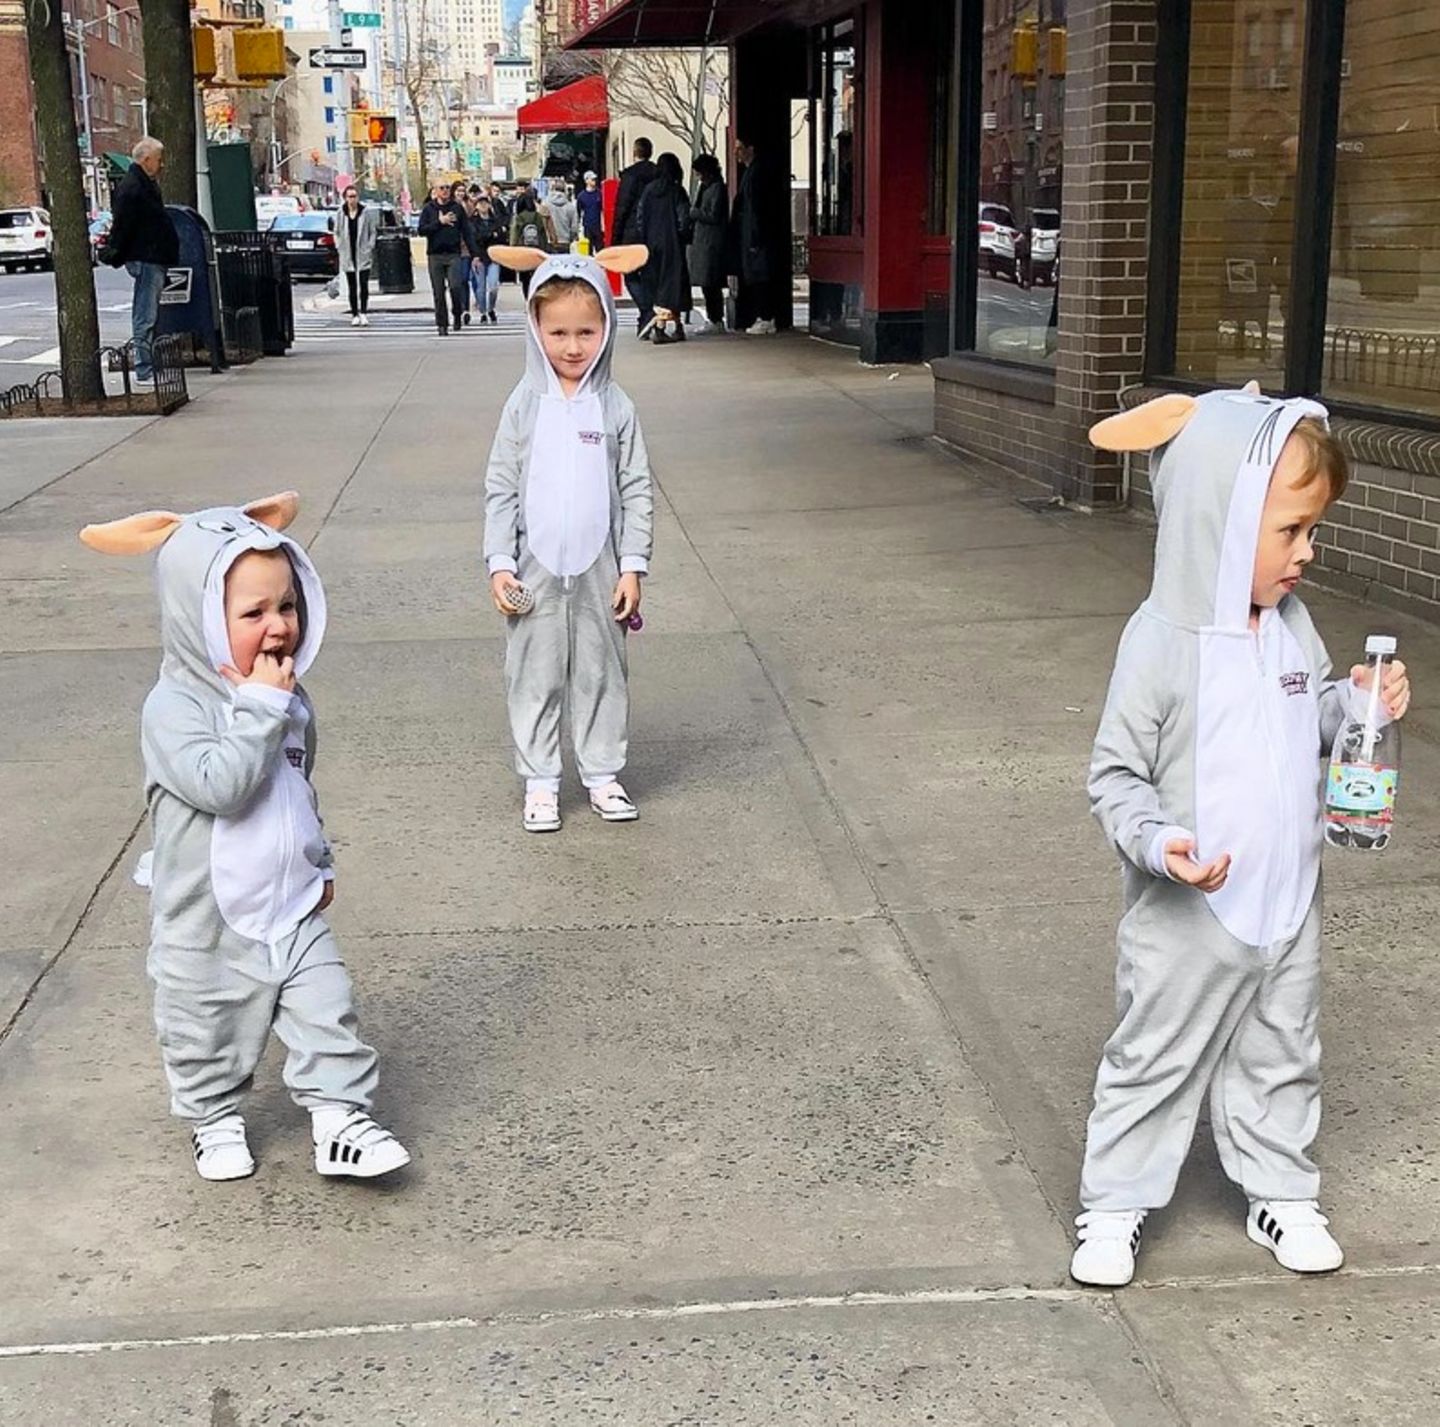 Kleine Osterhasen mitten in New York. Hilaria Baldwin sendet über Instagram süße Ostergrüße. Die drei Kids Carmen, Leonardo und Rafael haben sich in zuckersüße Osterkostüme geworfen und laufen durch die Stadt. 